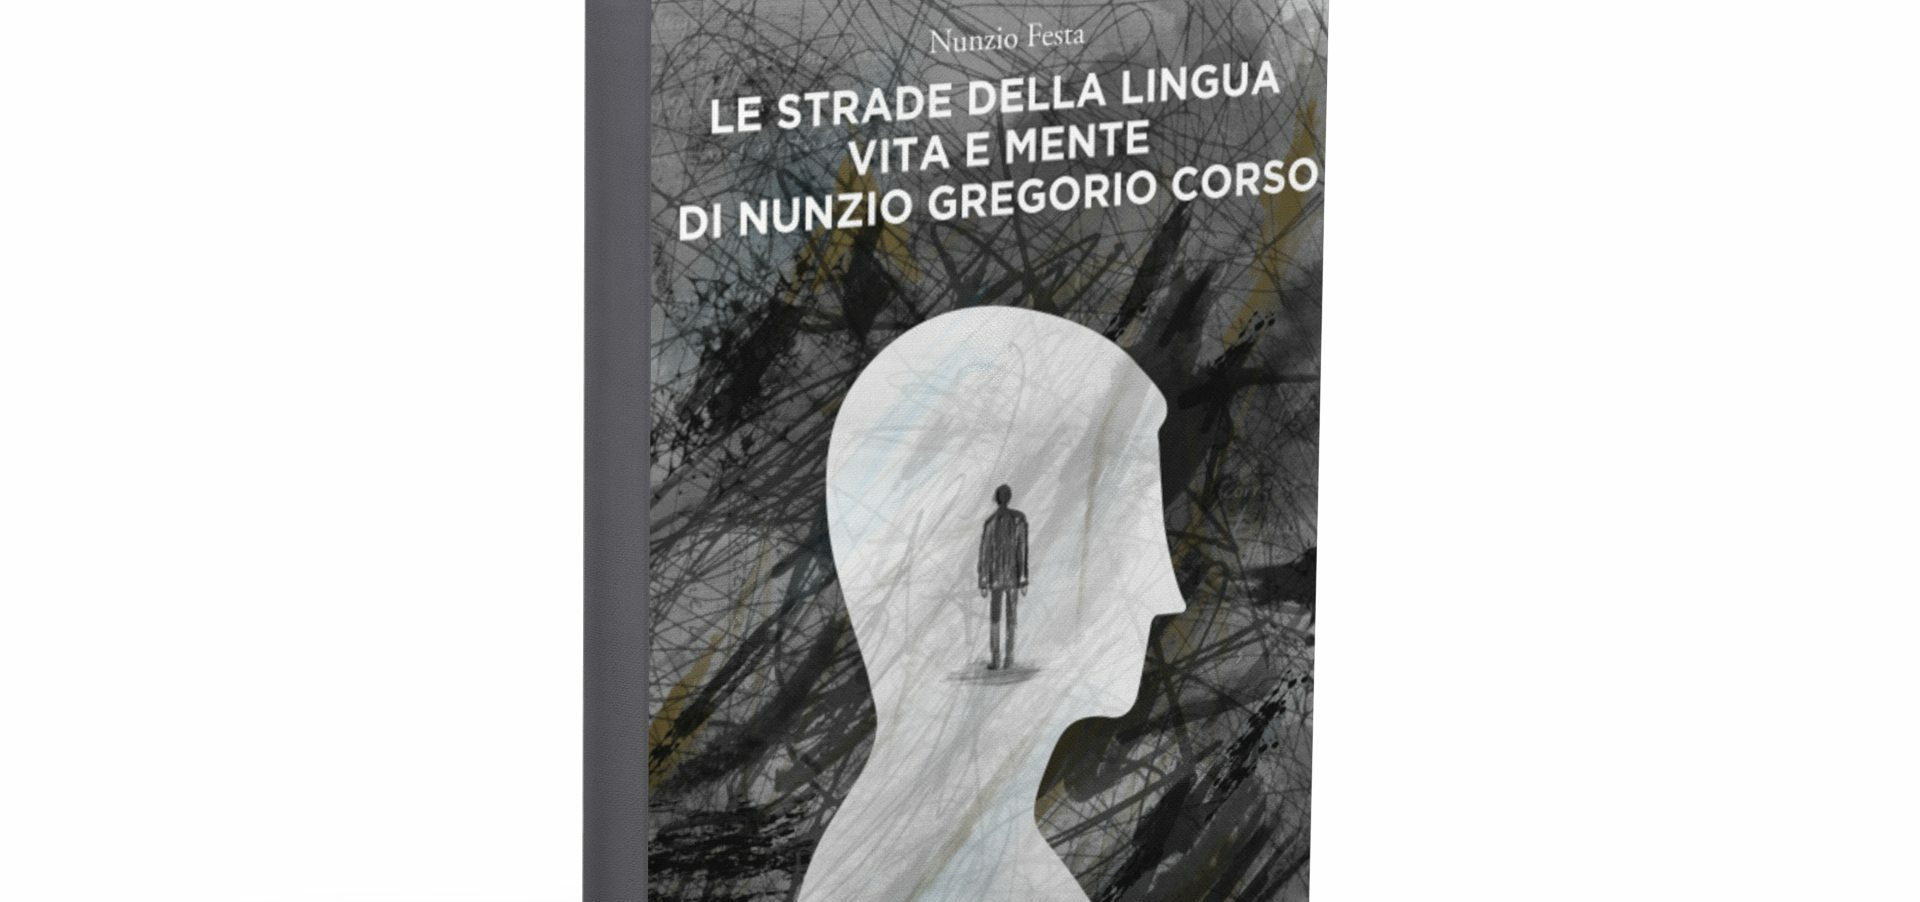 Dallo scrittore lucano Nunzio Festa “Le strade della lingua”, la prima biografia romanzata in italiano dedicata a Gregory Corso